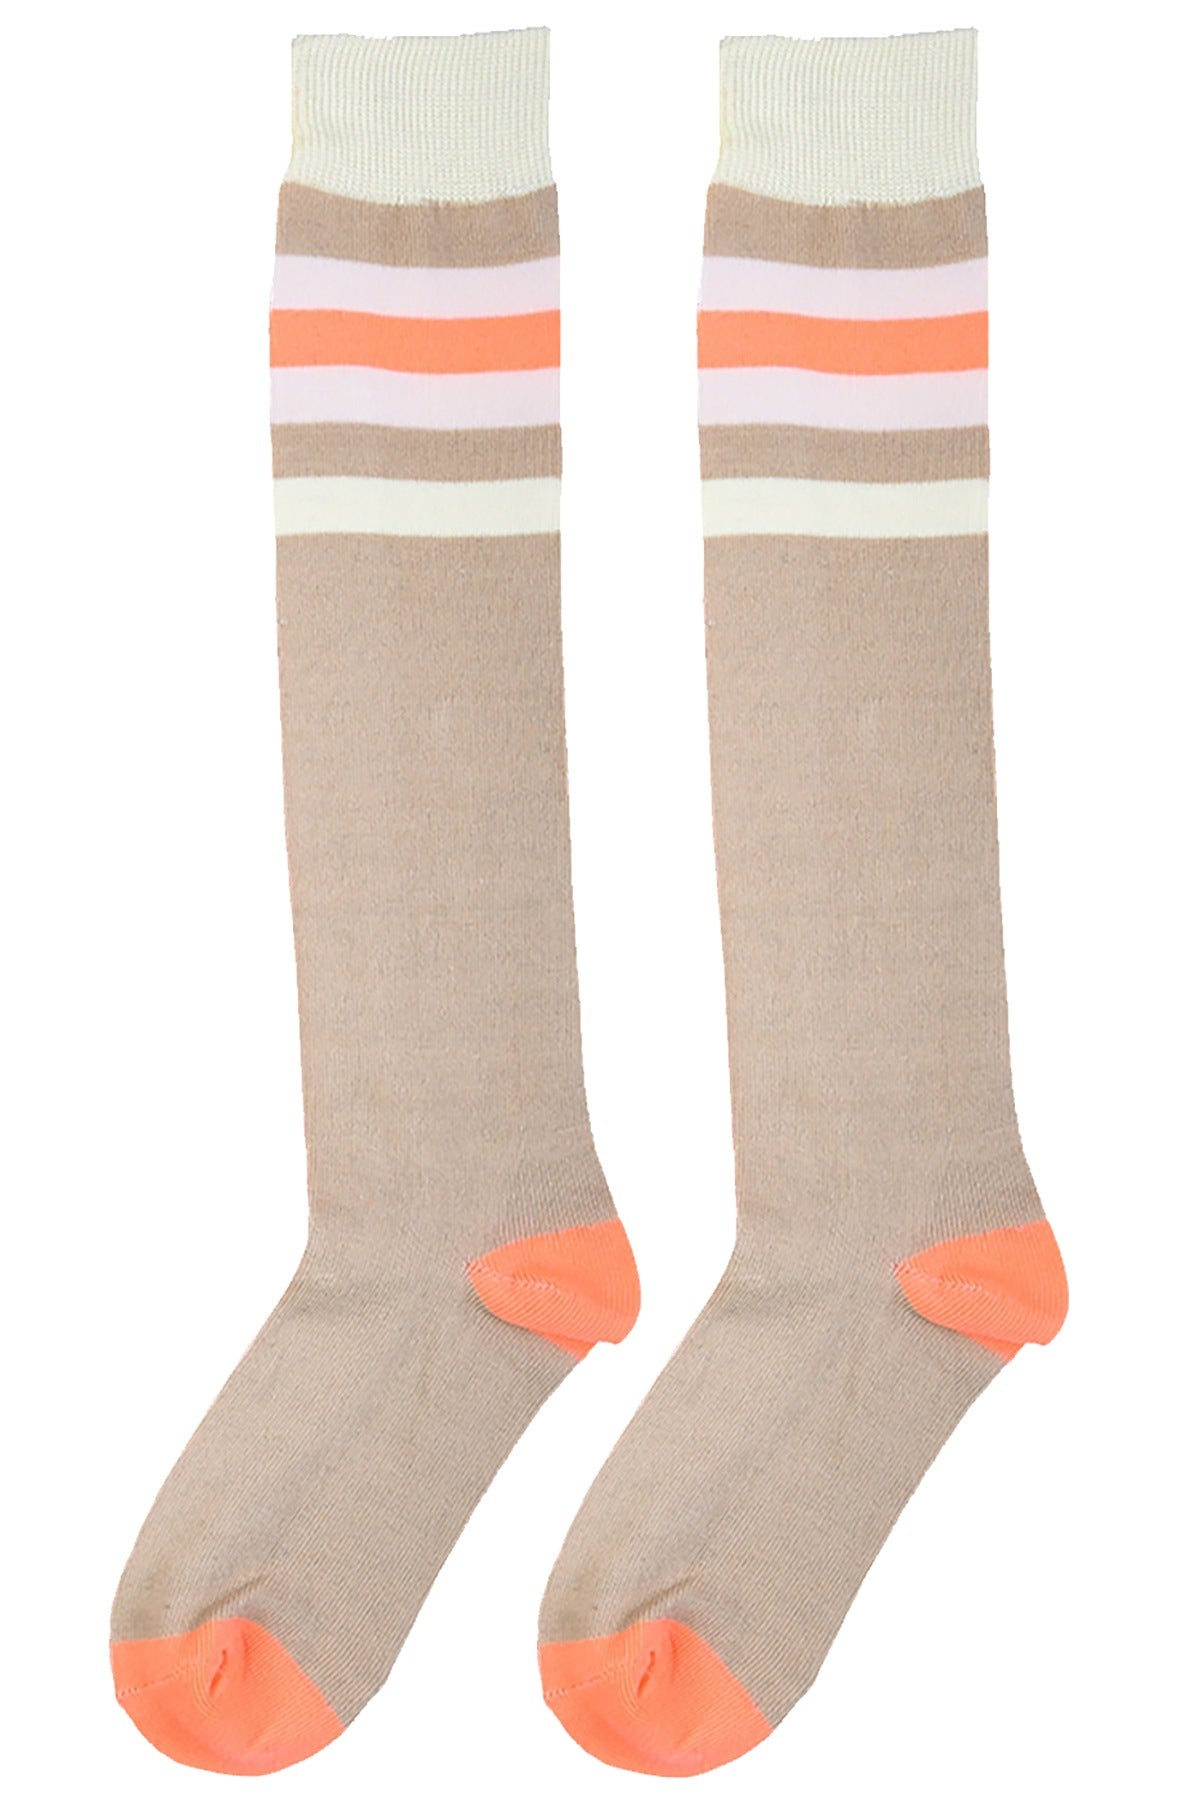 Mamia Orange Creamsicle Peace Knee High Socks